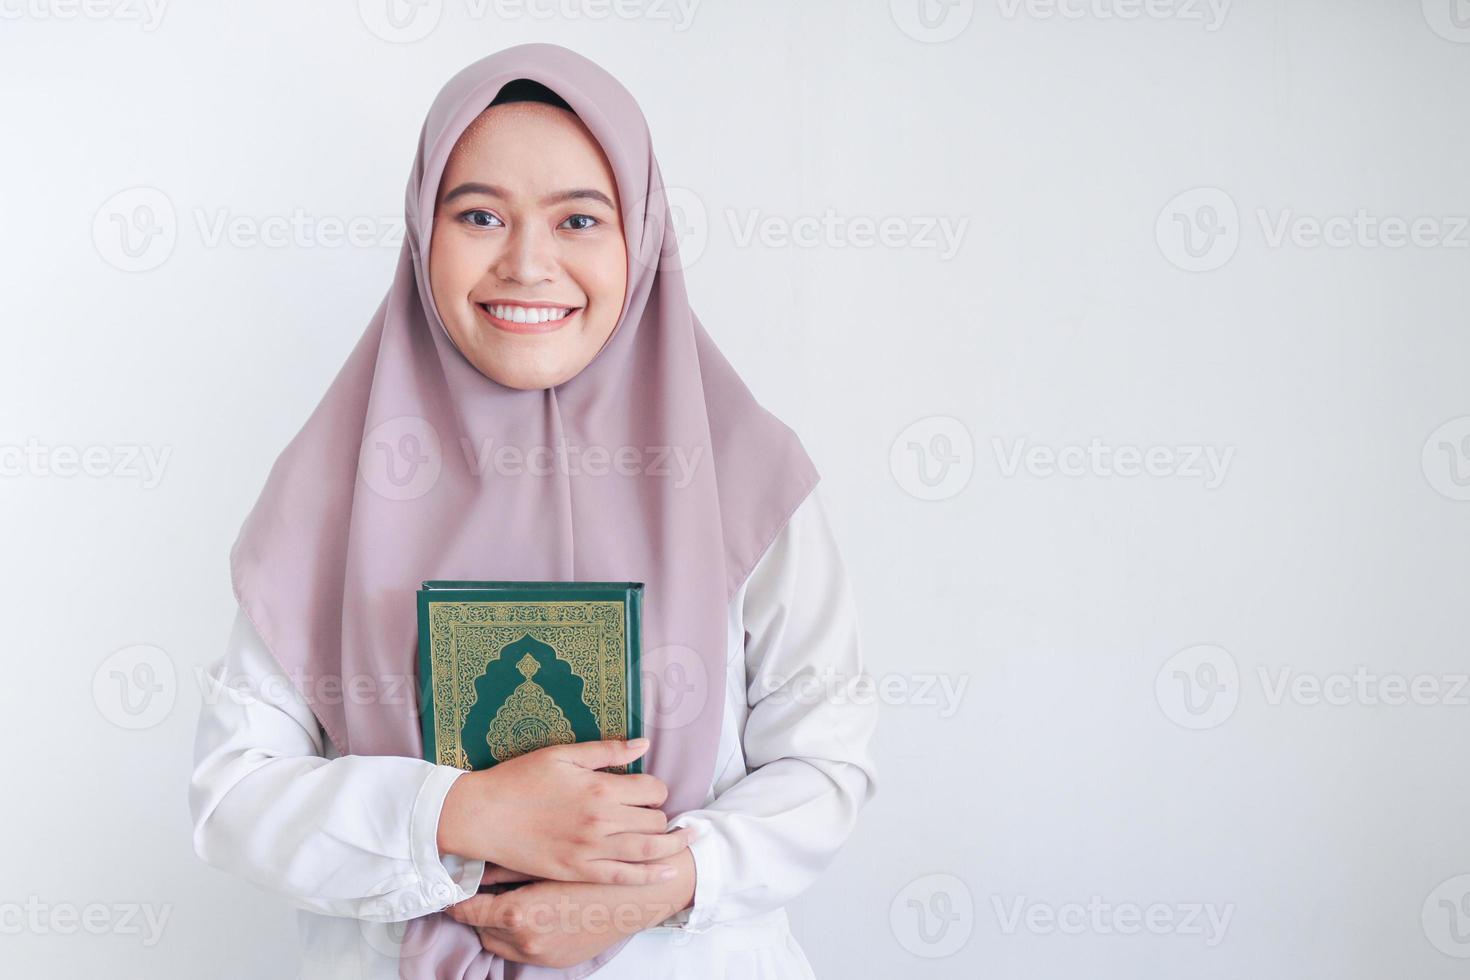 jonge aziatische islamvrouw die een hoofddoek draagt, houdt heilige al koran in de hand met een glimlach en een blij gezicht. Indonesische vrouw op grijze achtergrond foto